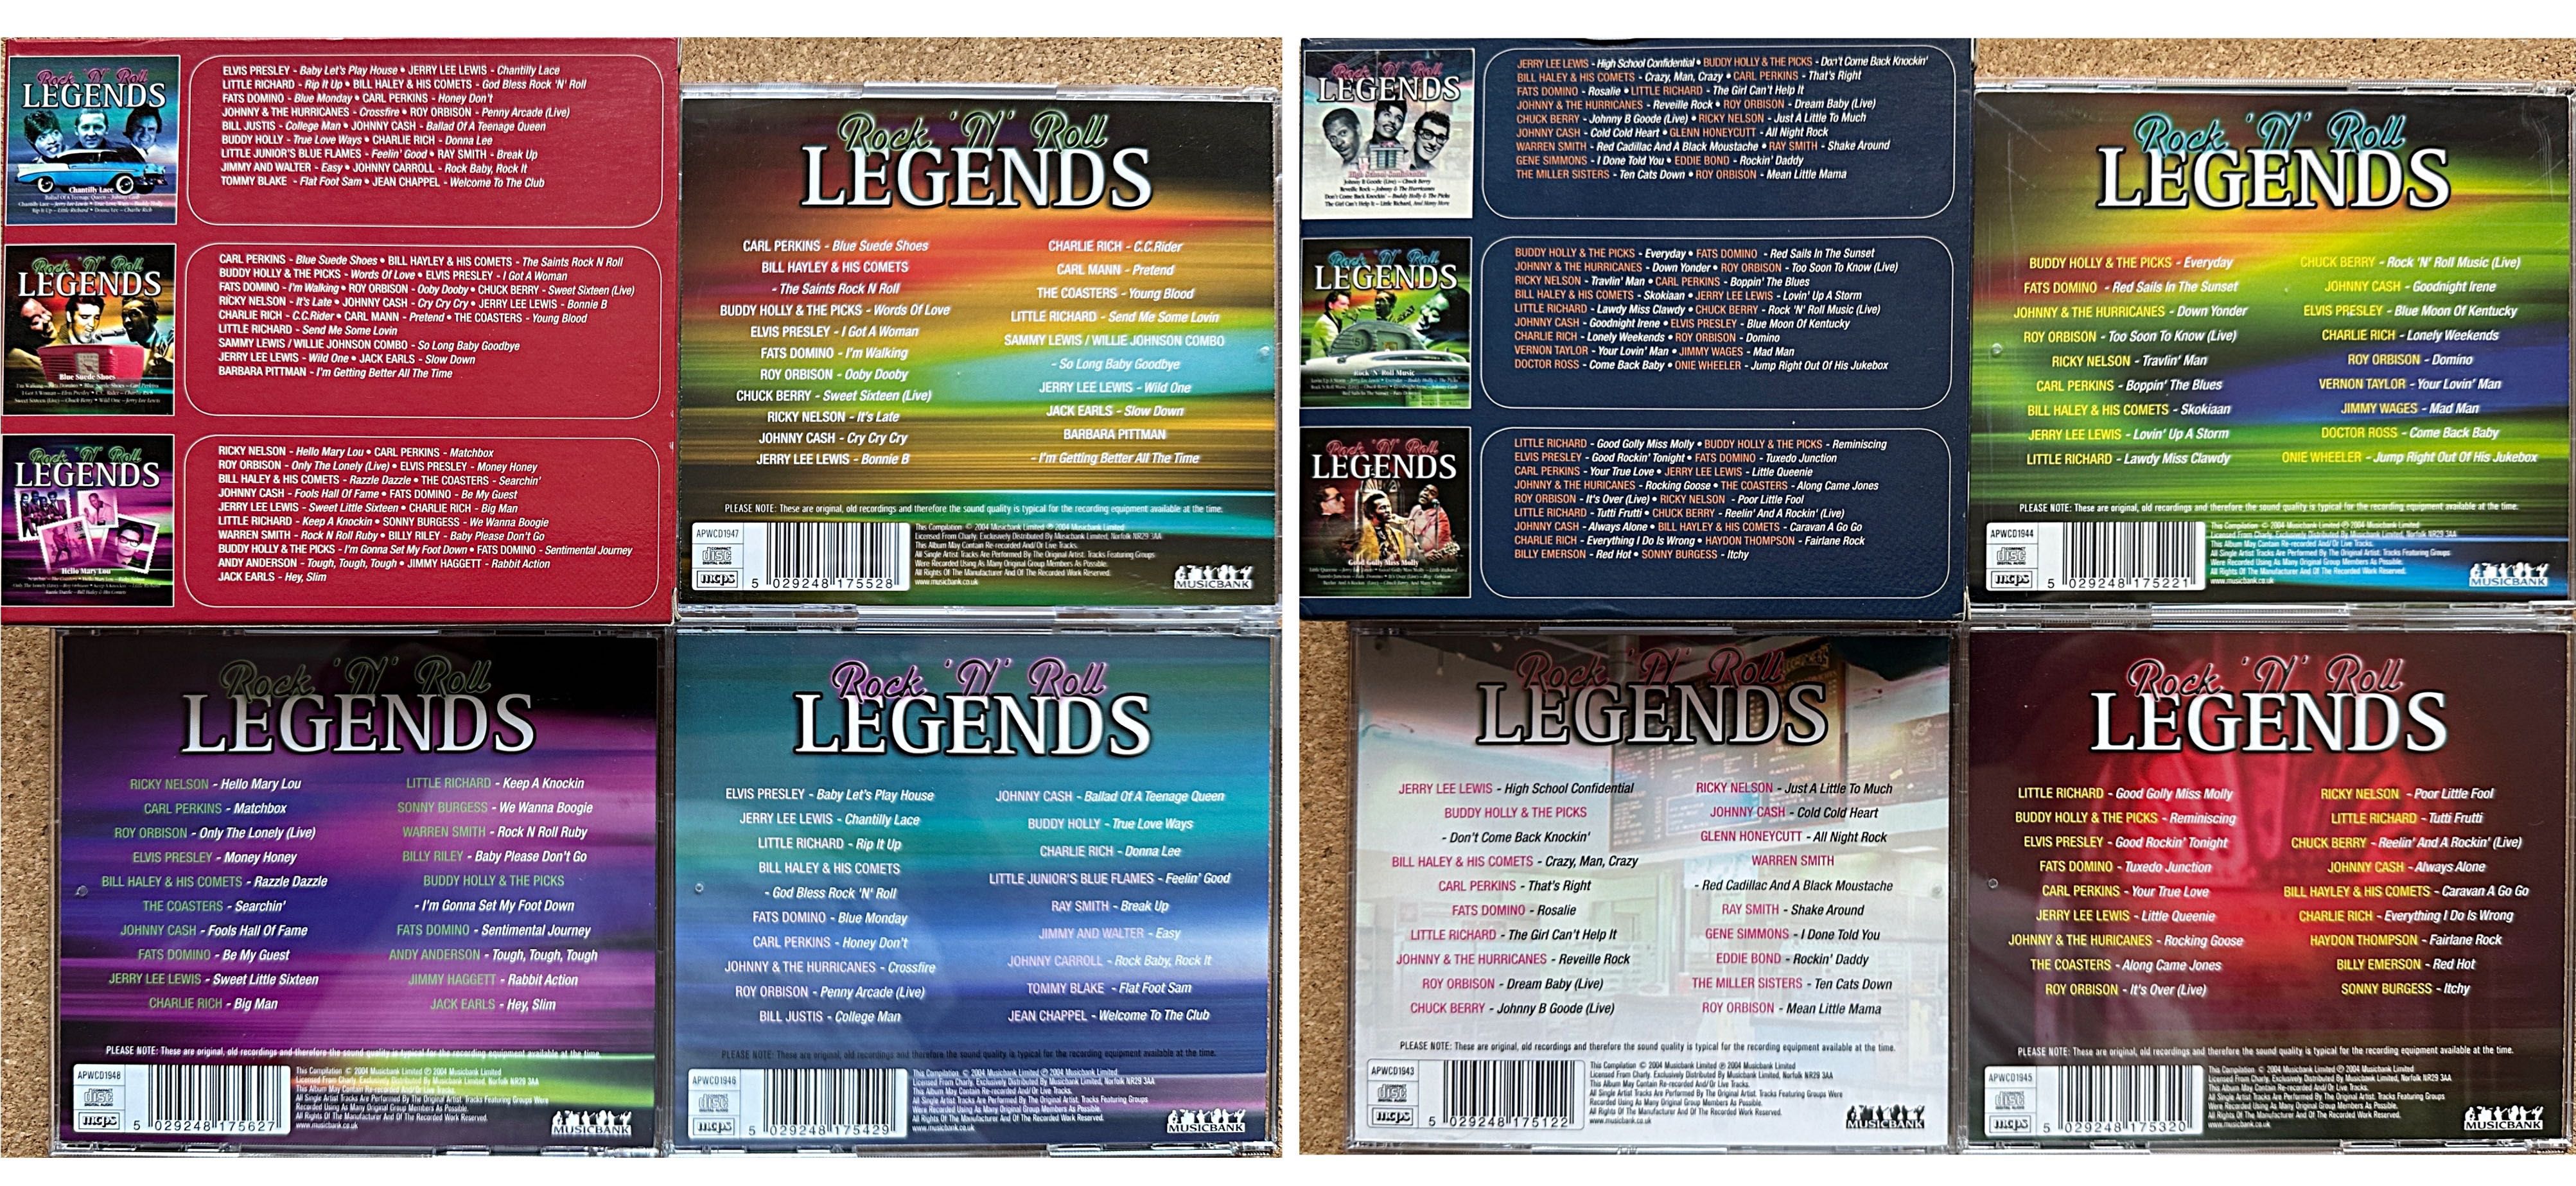 Rock'N'Roll Legends 6 szt CD - 2 kpl po 3 płyty CD